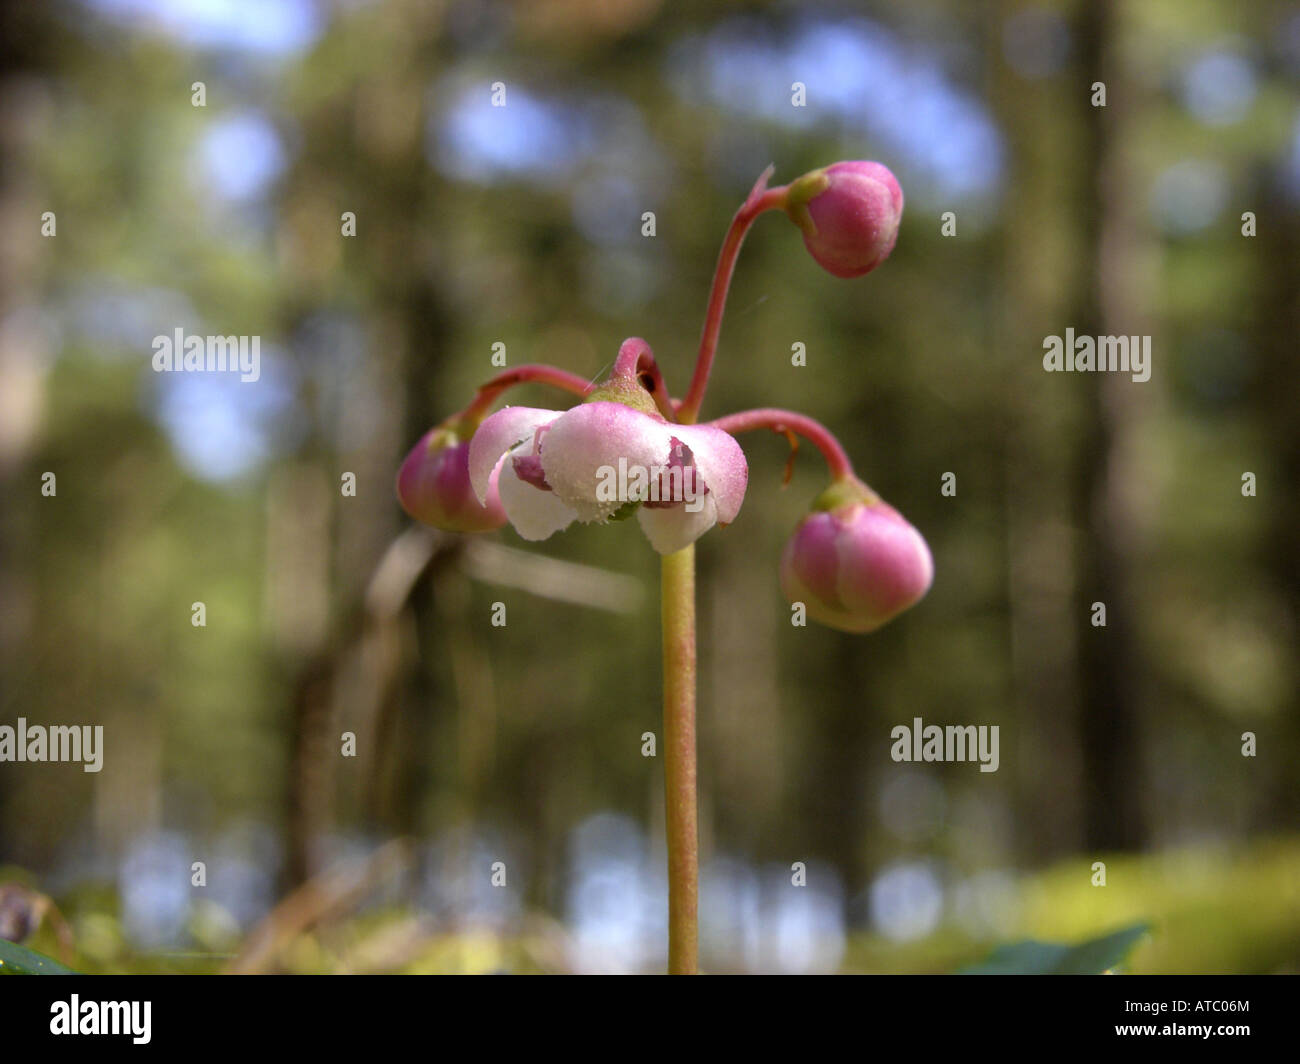 pipsissewa, umbellate wintergreen (Chimaphila umbellata), blossom Stock Photo